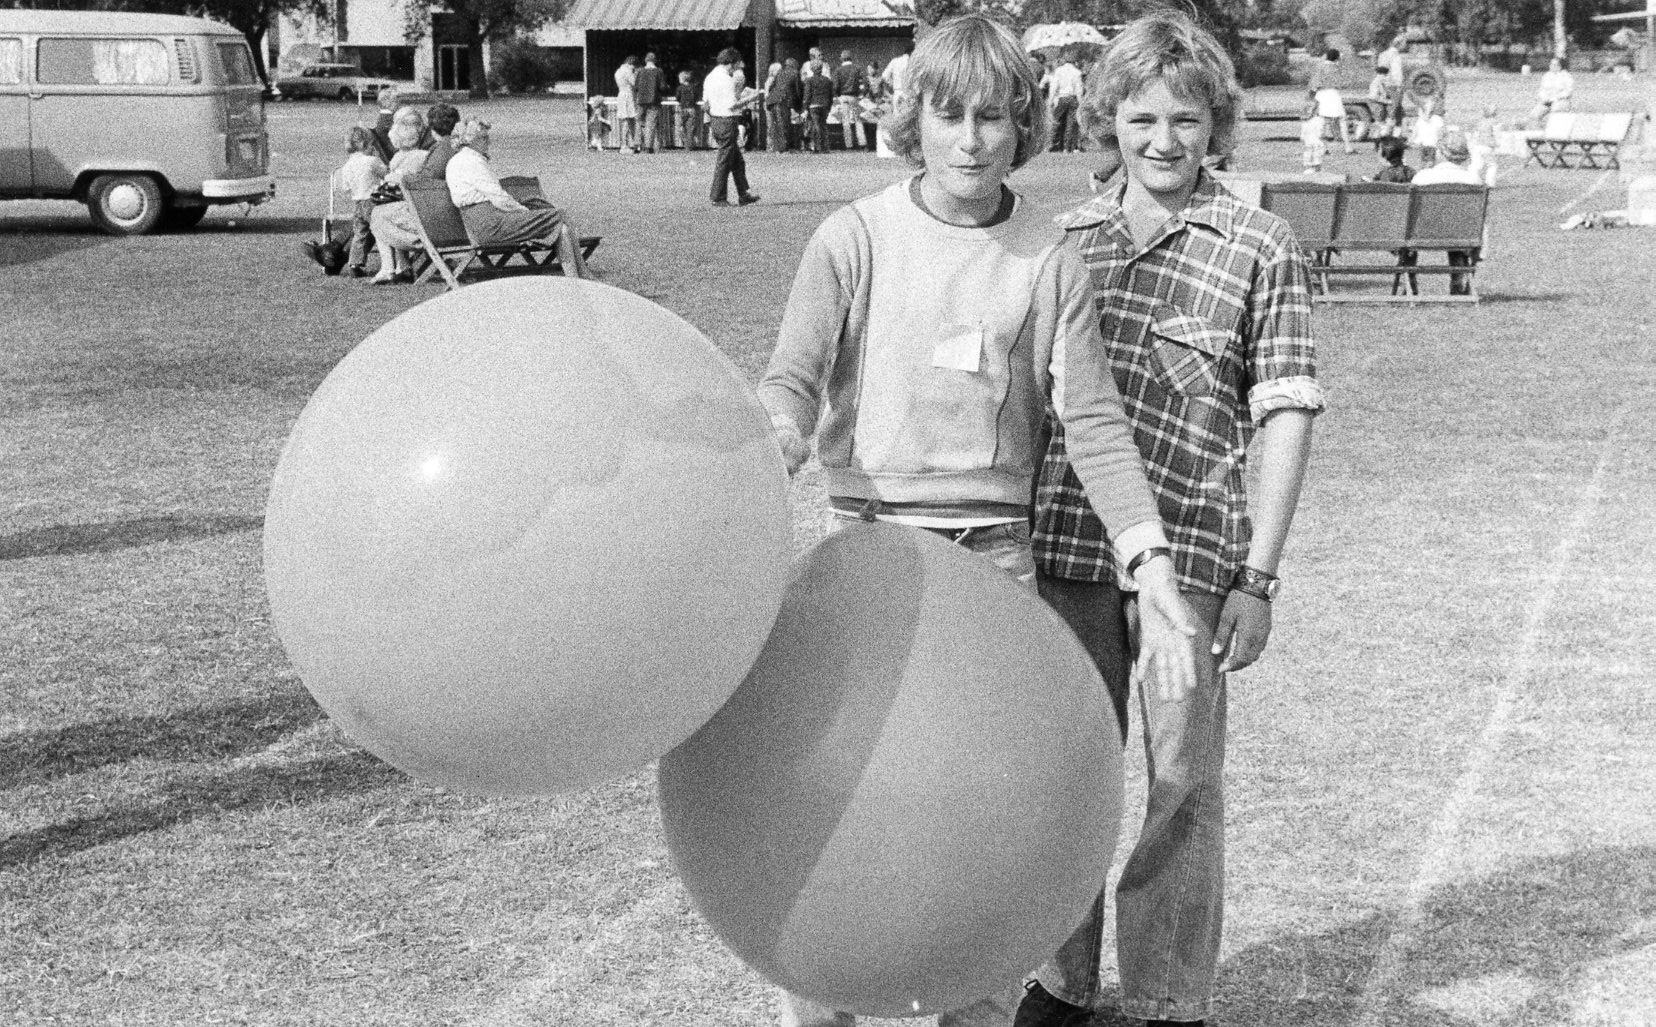 1977 - KC - Lentara Fair - Rob Martin, Richard Correll Selling Balloons